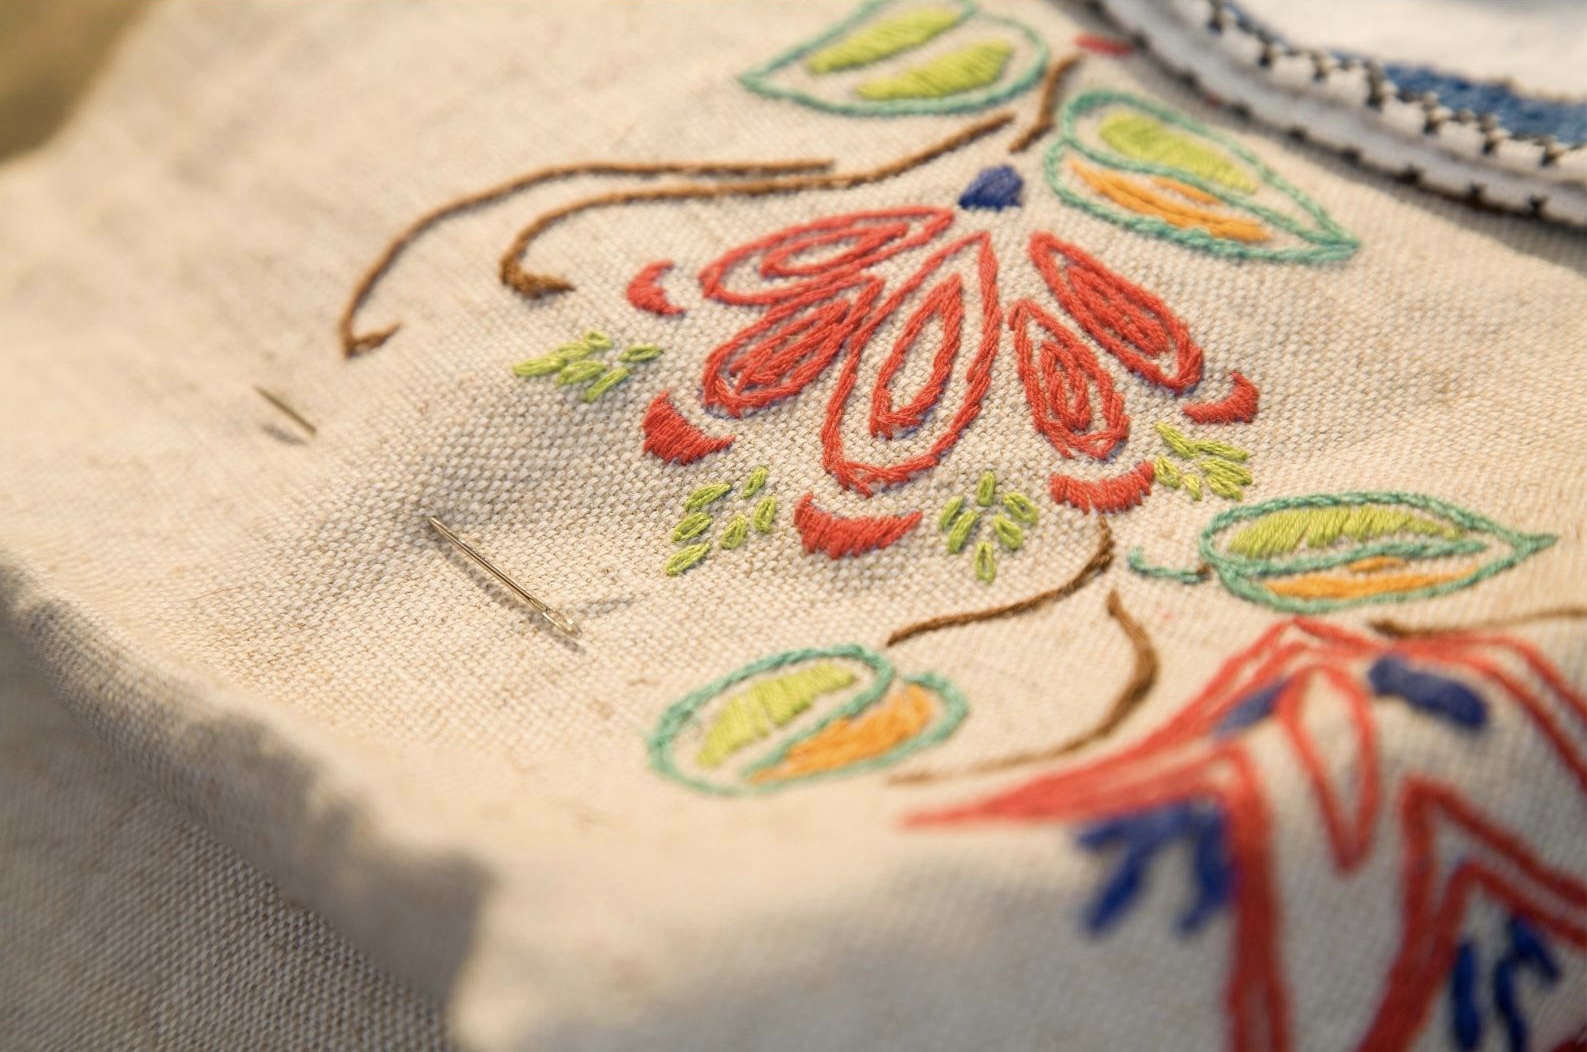 remove embroidery